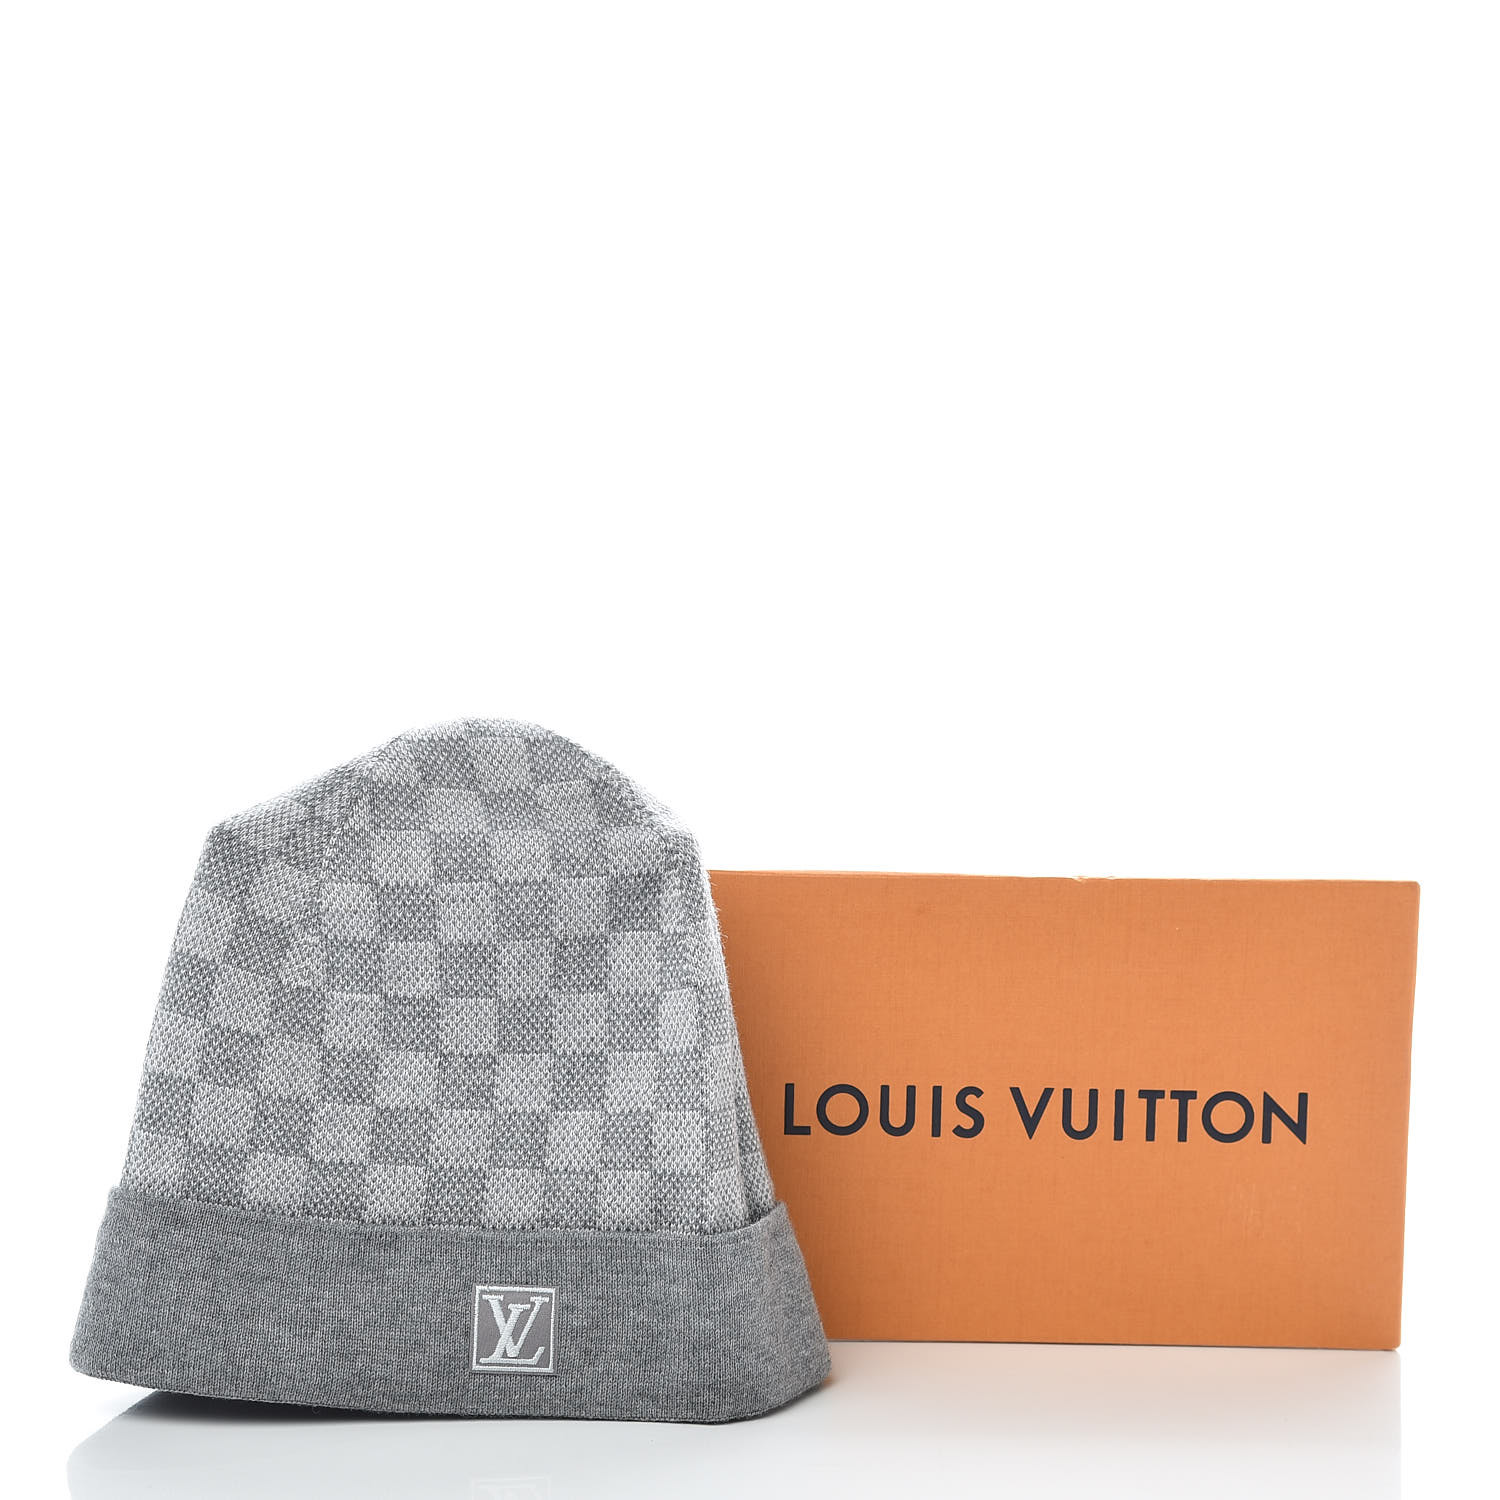 Louis Vuitton hat  Luxury hats, Louis vuitton hat, Louis vuitton handbags